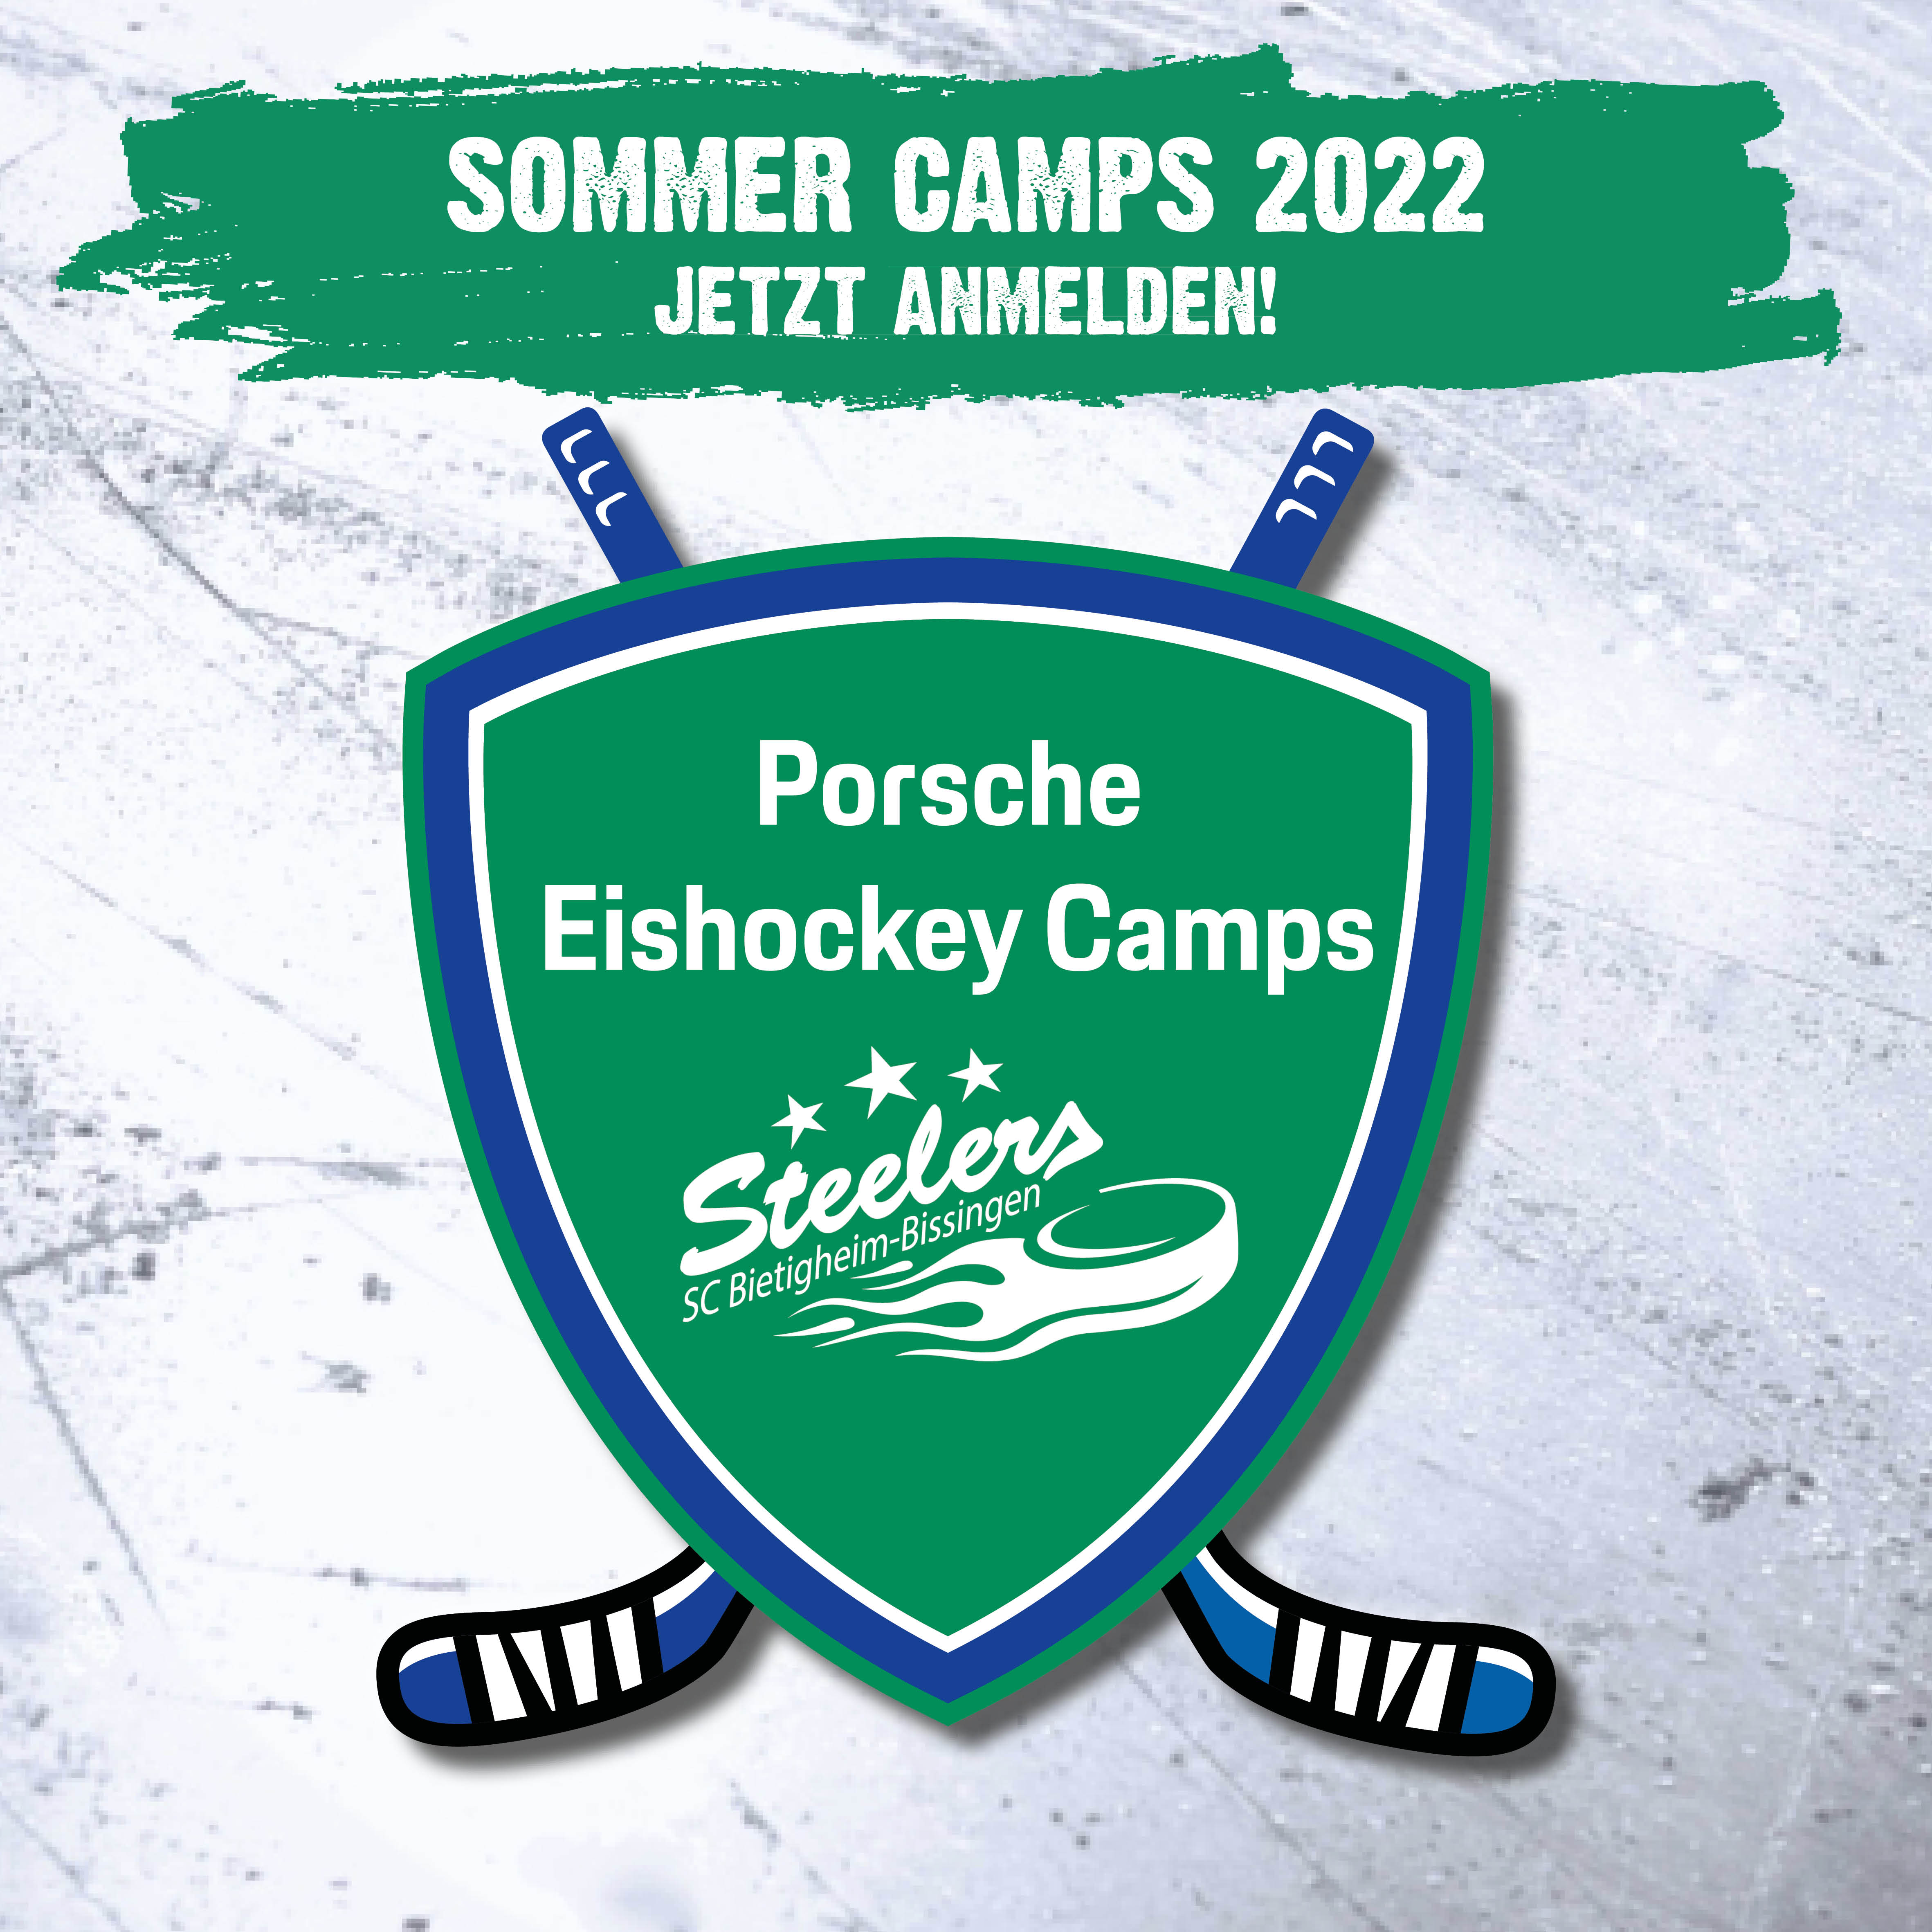 Anmeldungen für Porsche Eishockey Camps Bild